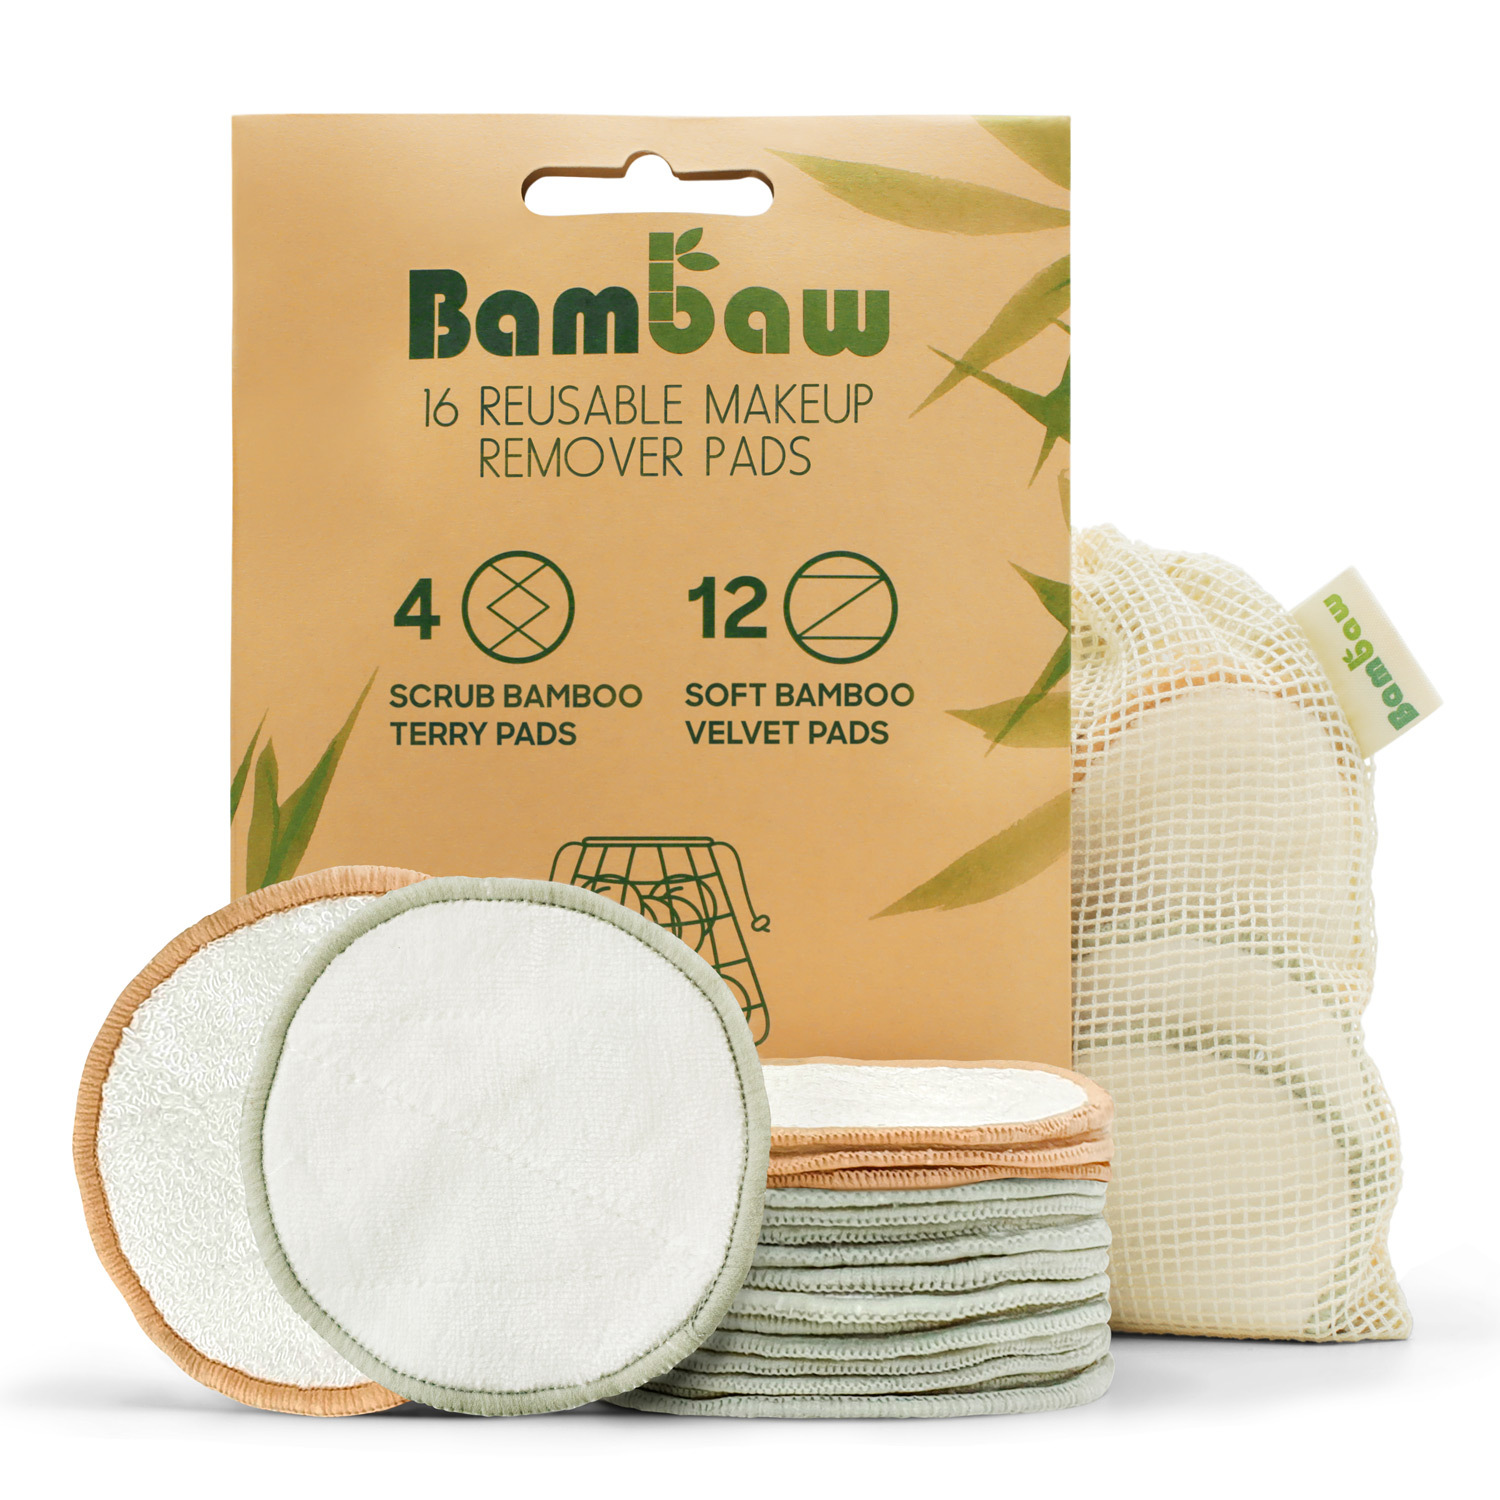 Bambaw Bamboo 16 Reusable Makeup Remover Pads